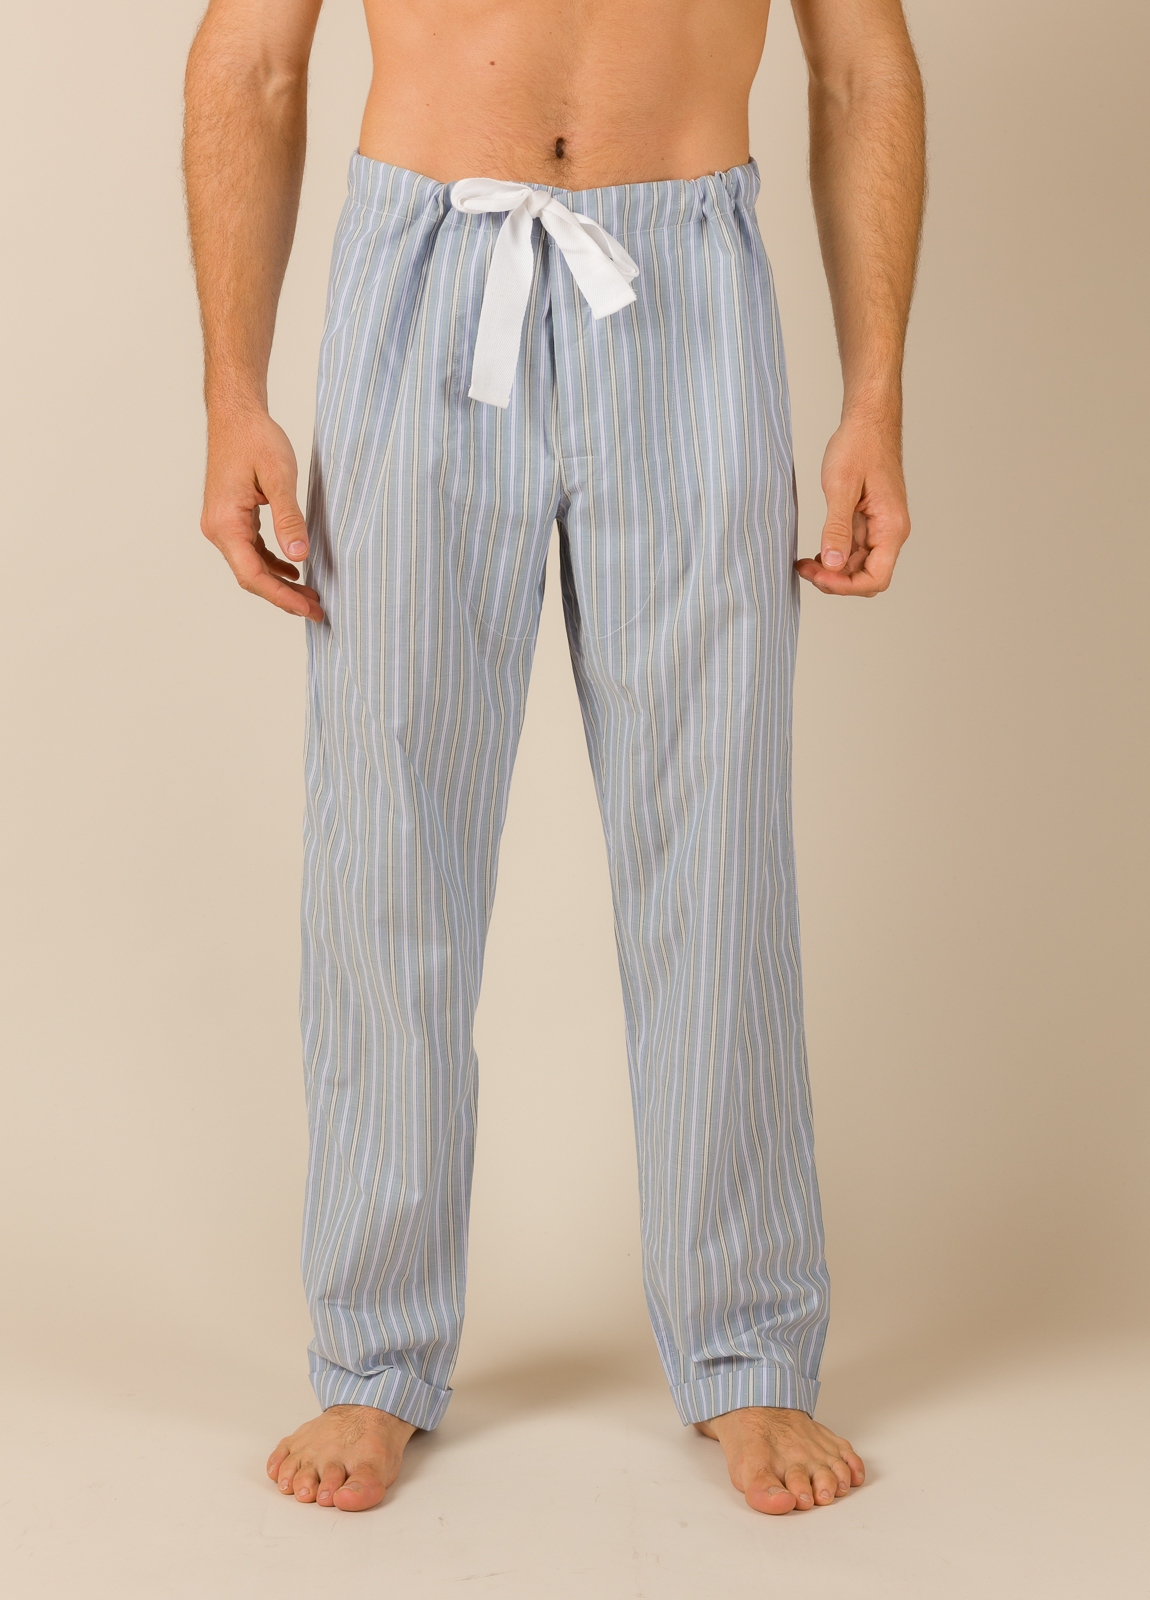 Pantalón largo de Pijama FUREST COLECCIÓN rayas azul y verde funda incluida